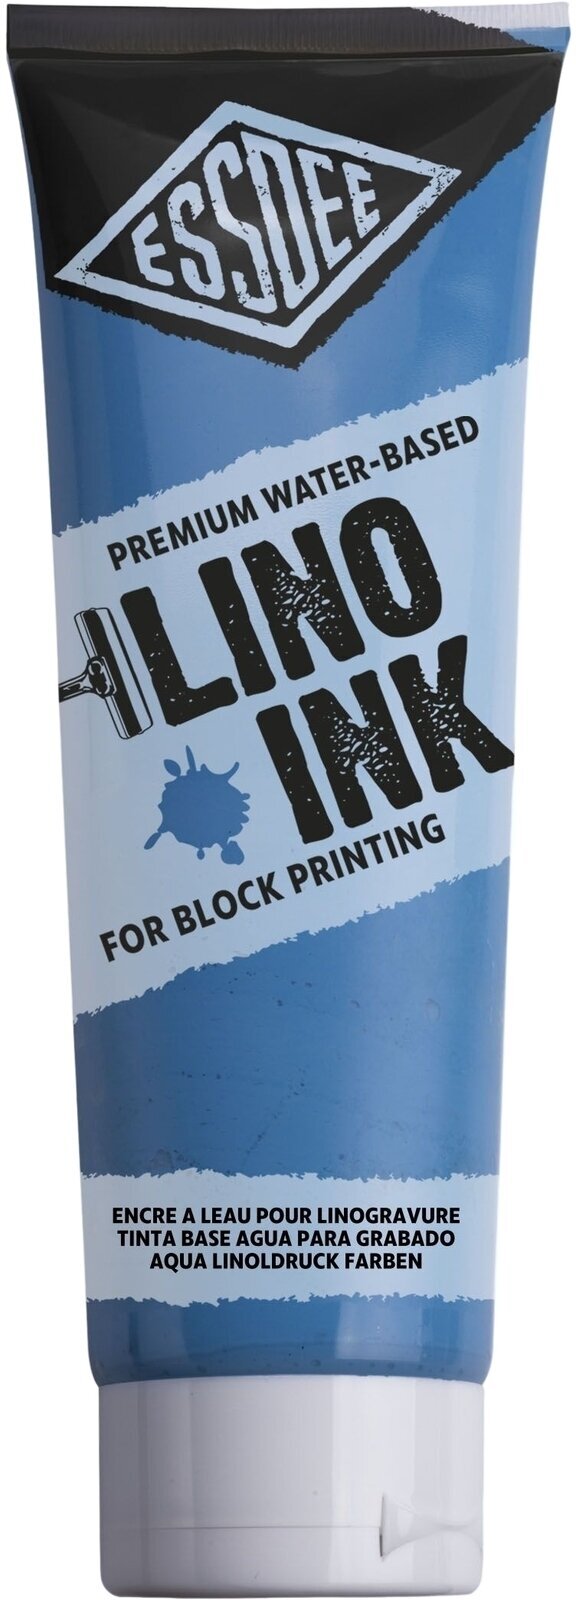 Χρώμα για λινογραφία Essdee Block Printing Ink Χρώμα για λινογραφία Fluorescent Blue 300 ml